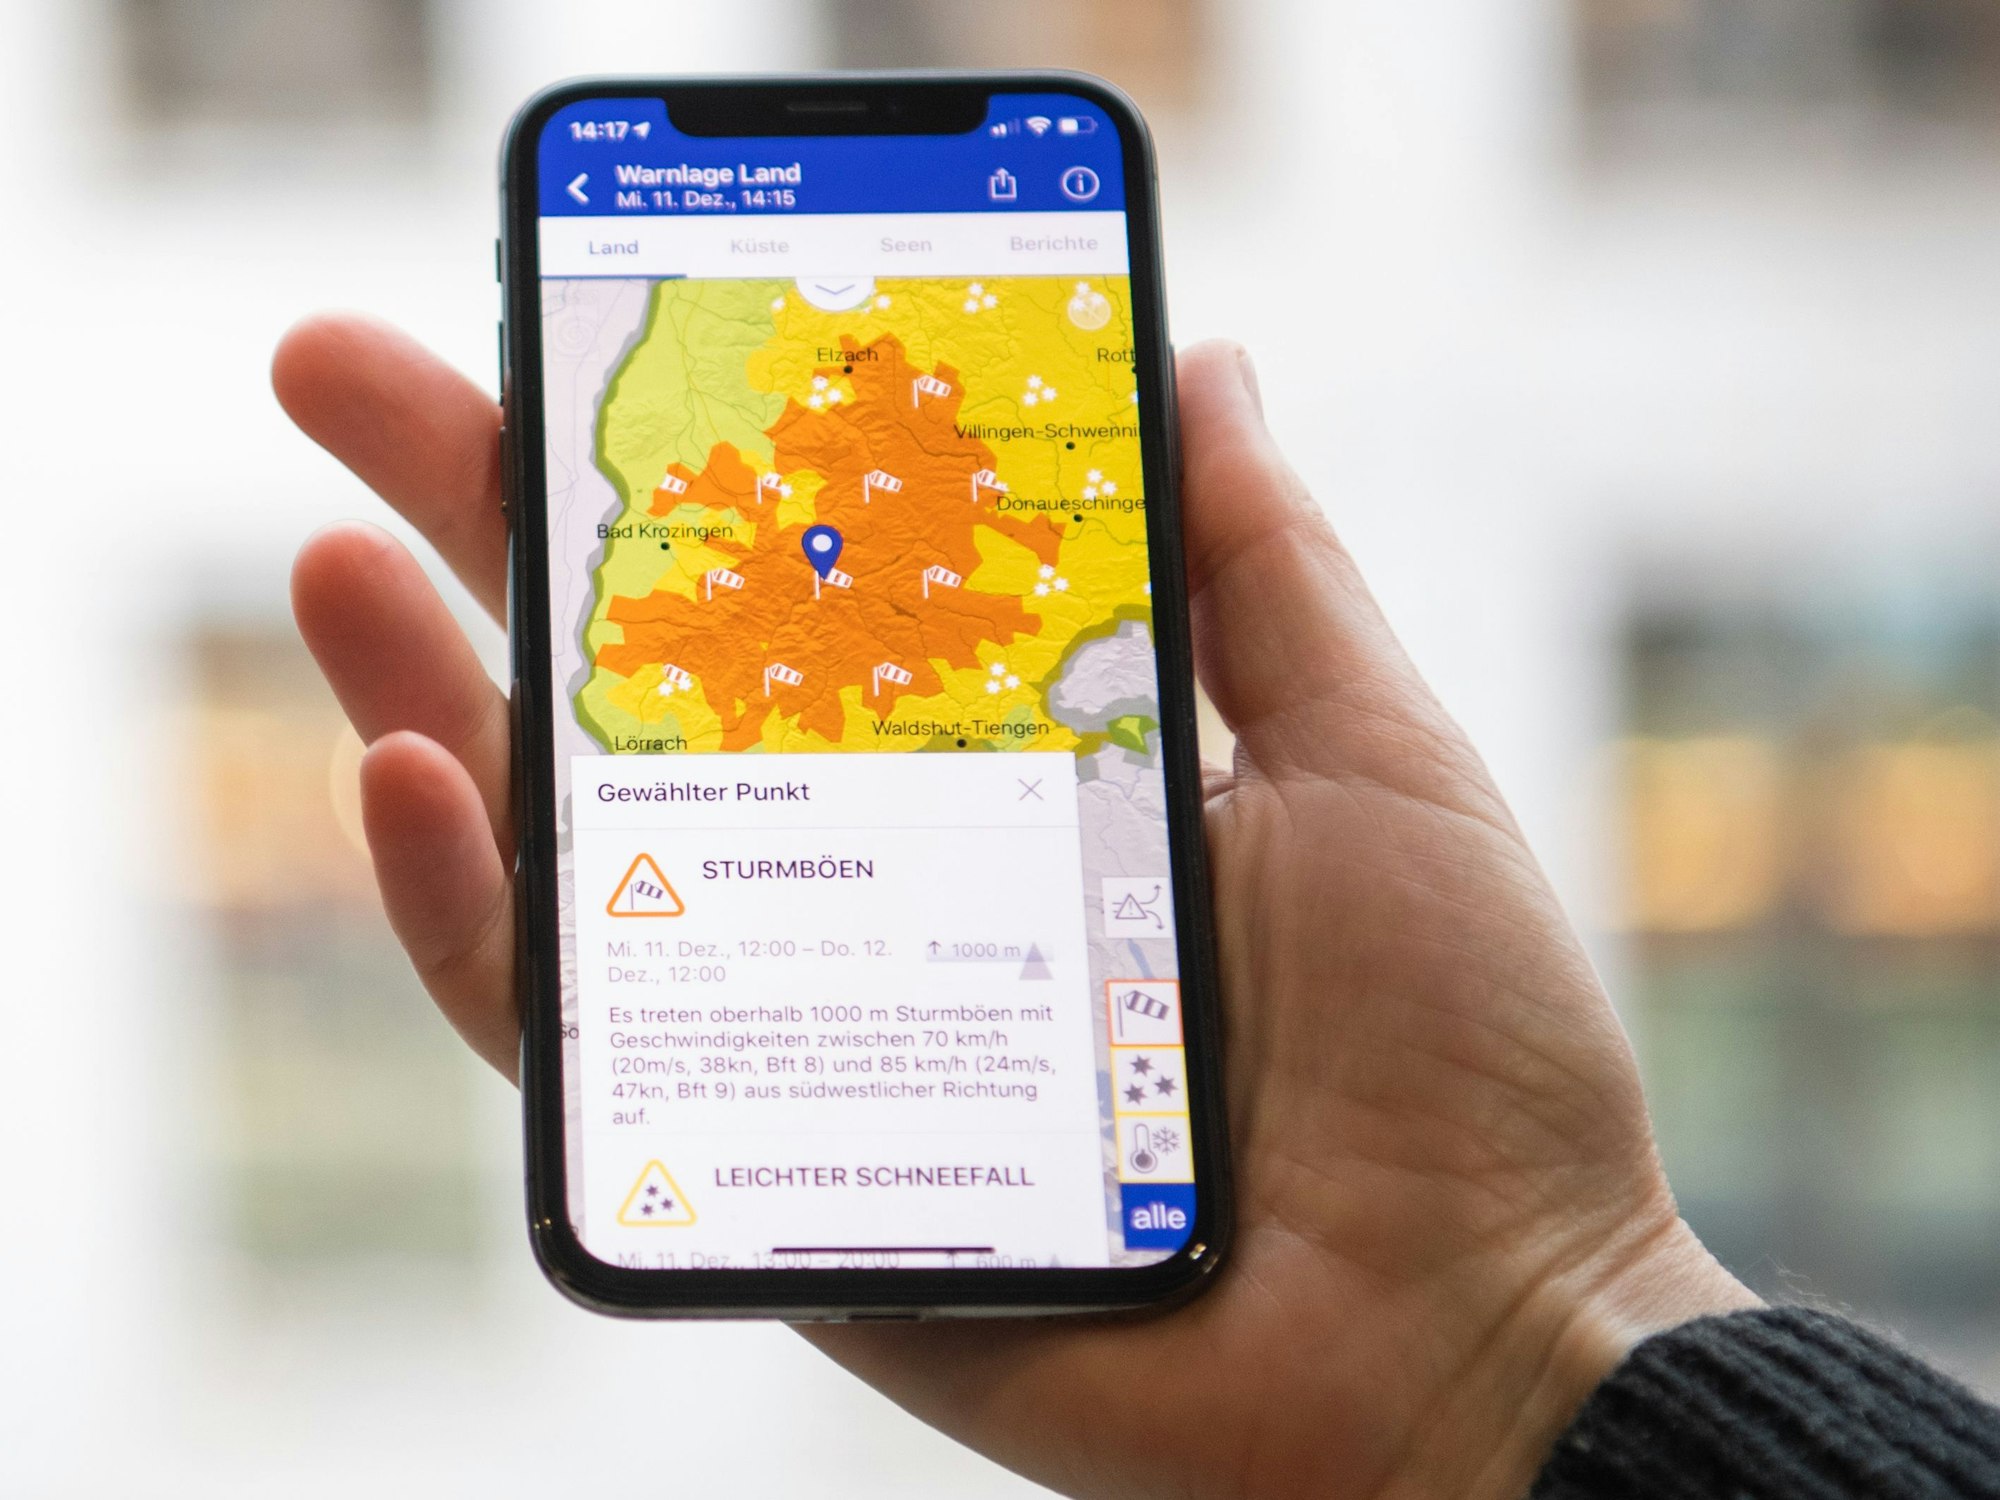 Das Symbolfoto aus dem Jahr 2019 zeigt eine Hand, die ein Smartphone hält. Auf dem Bildschirm sieht man eine Wetterkarte in gelb-orange, darunter steht Text.